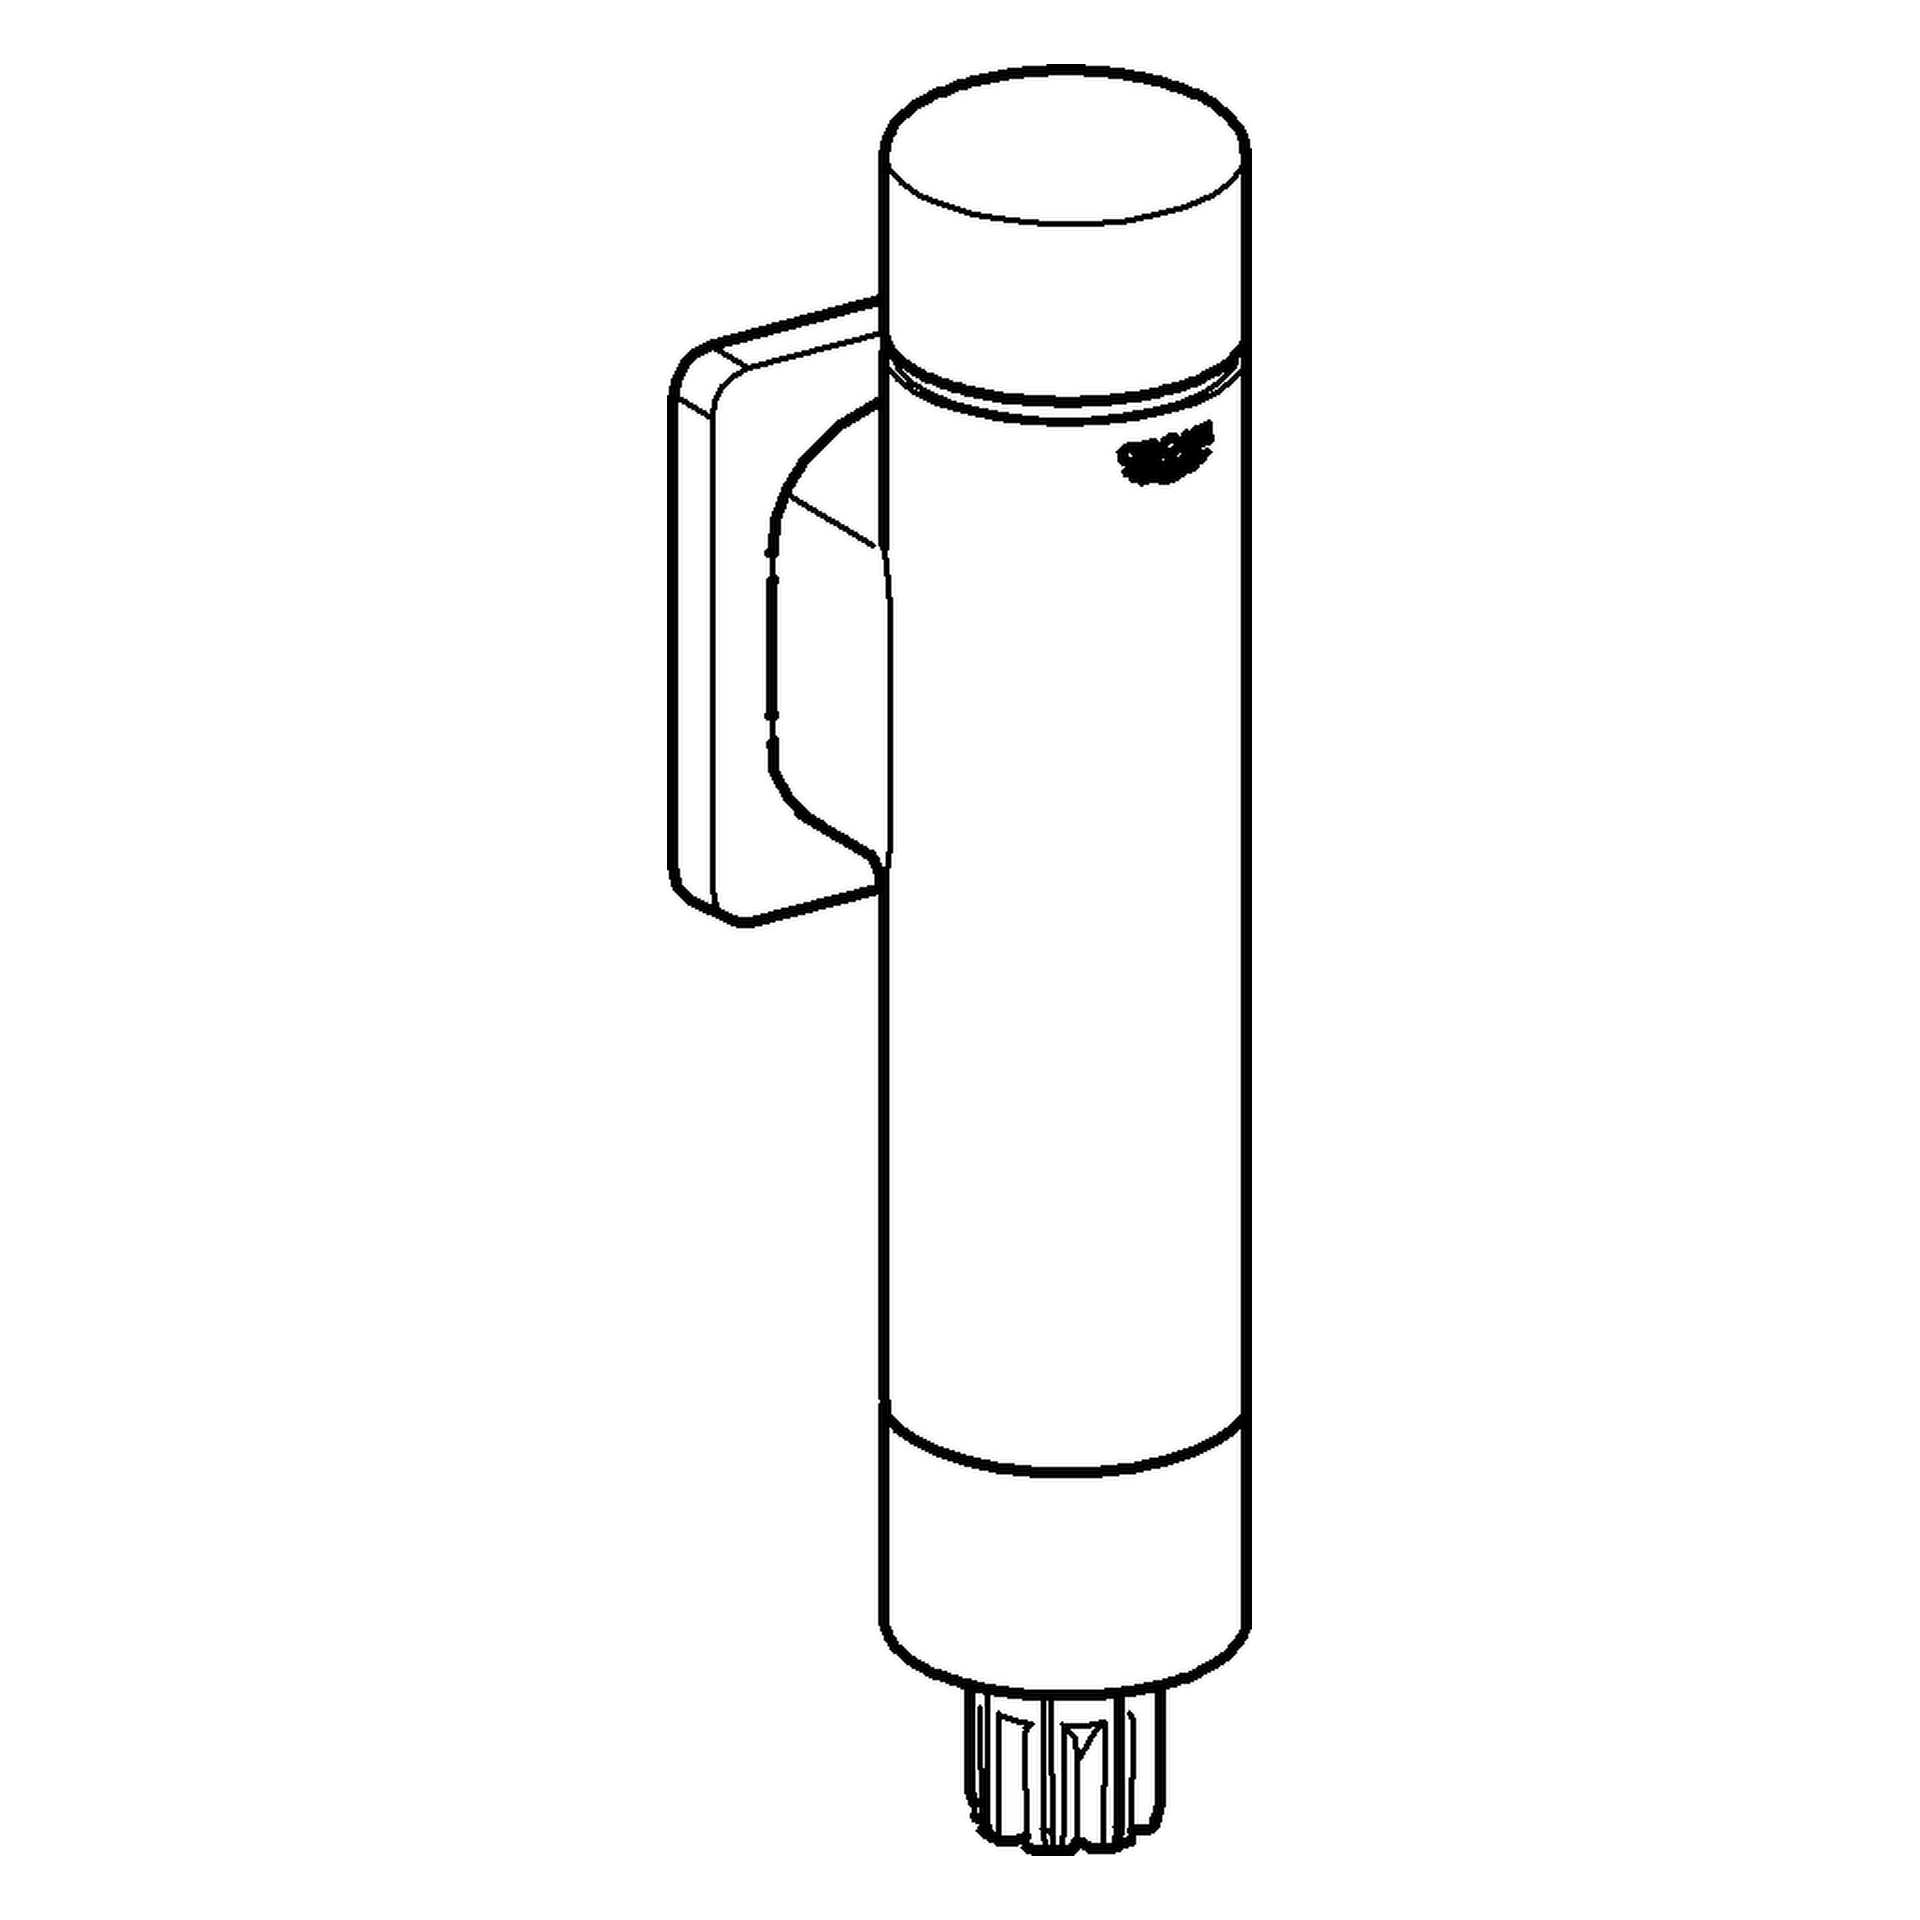 WC-Druckspüler Rondo A.S. 37347, DN 20, ohne Vorabsperrung, für Flach- und Tiefspül-WC, chrom